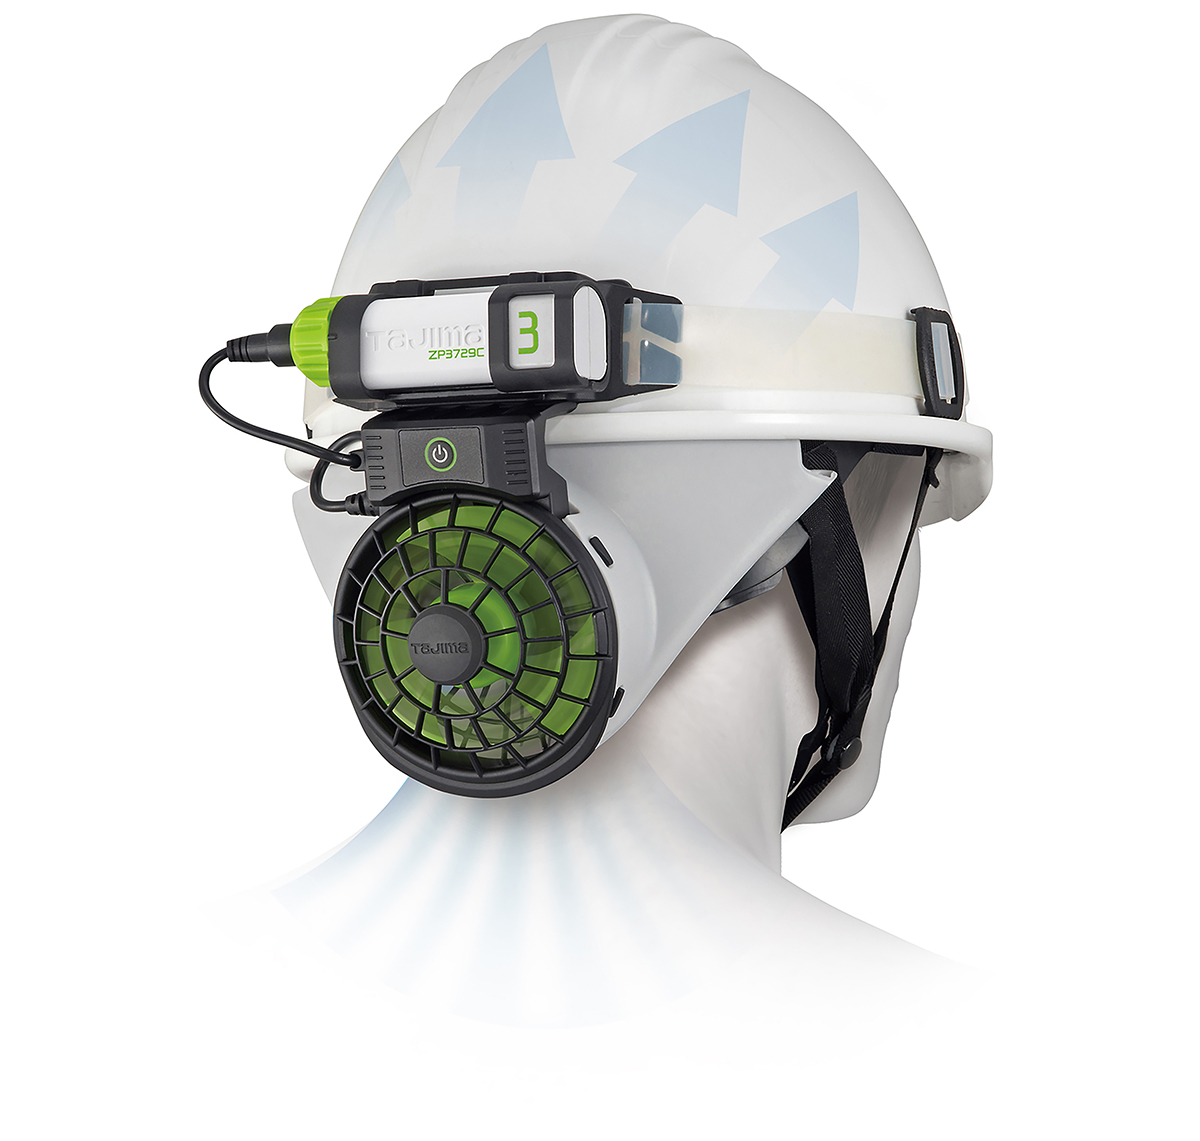 建設現場の熱中症を予防するヘルメット内送風機 | 日経クロステック Active